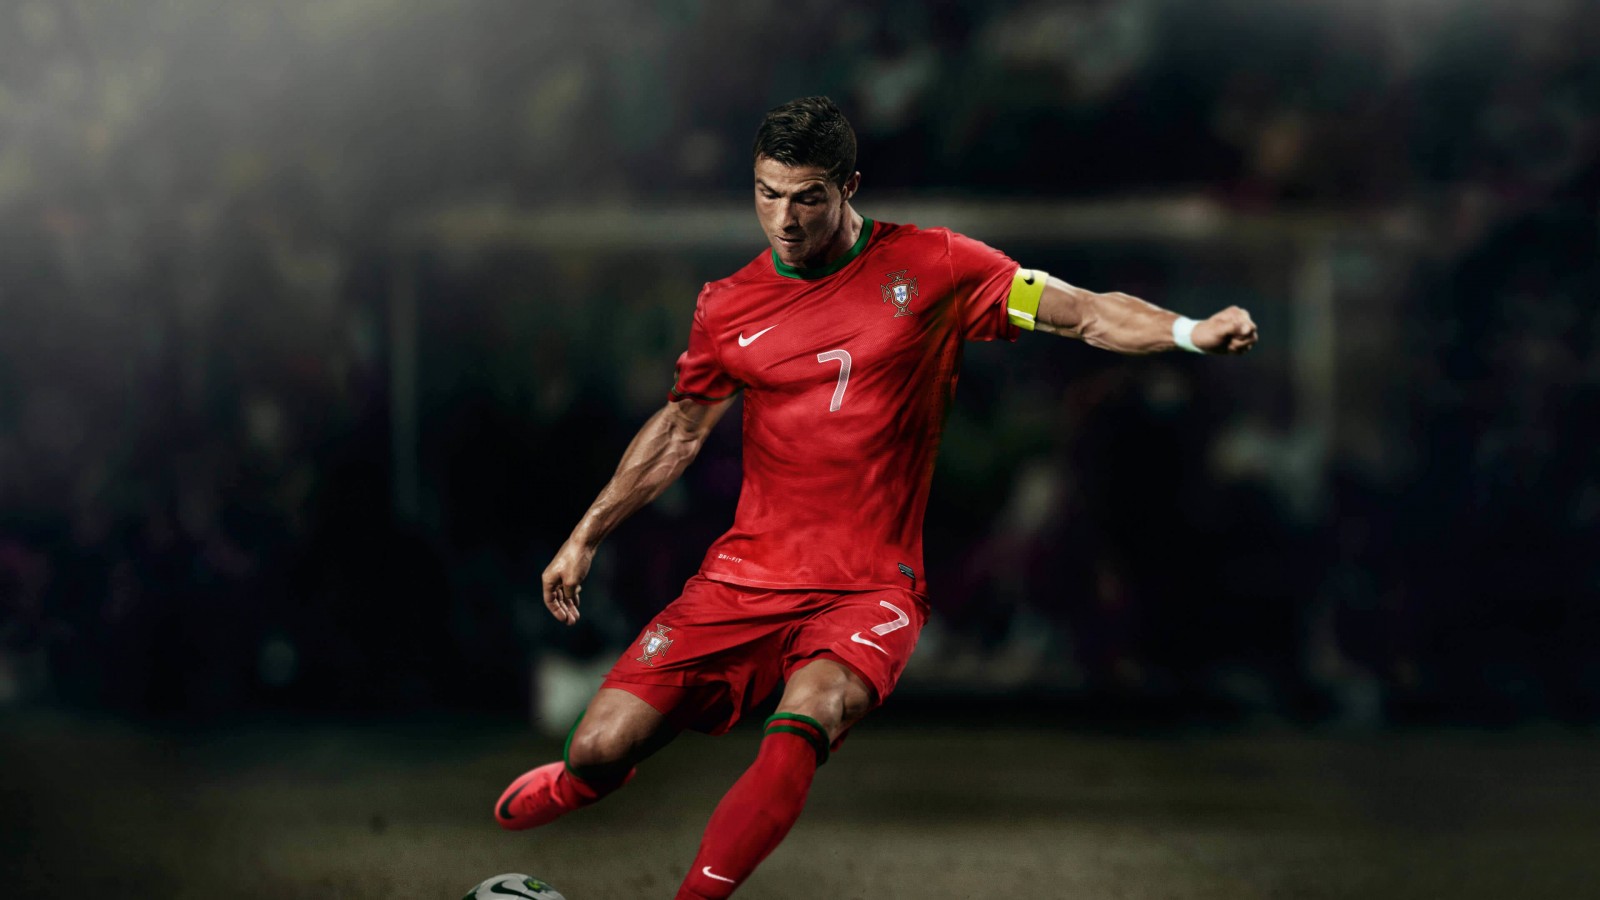 Cristiano Ronaldo In Portugal Jersey Wallpaper for Desktop 1600x900